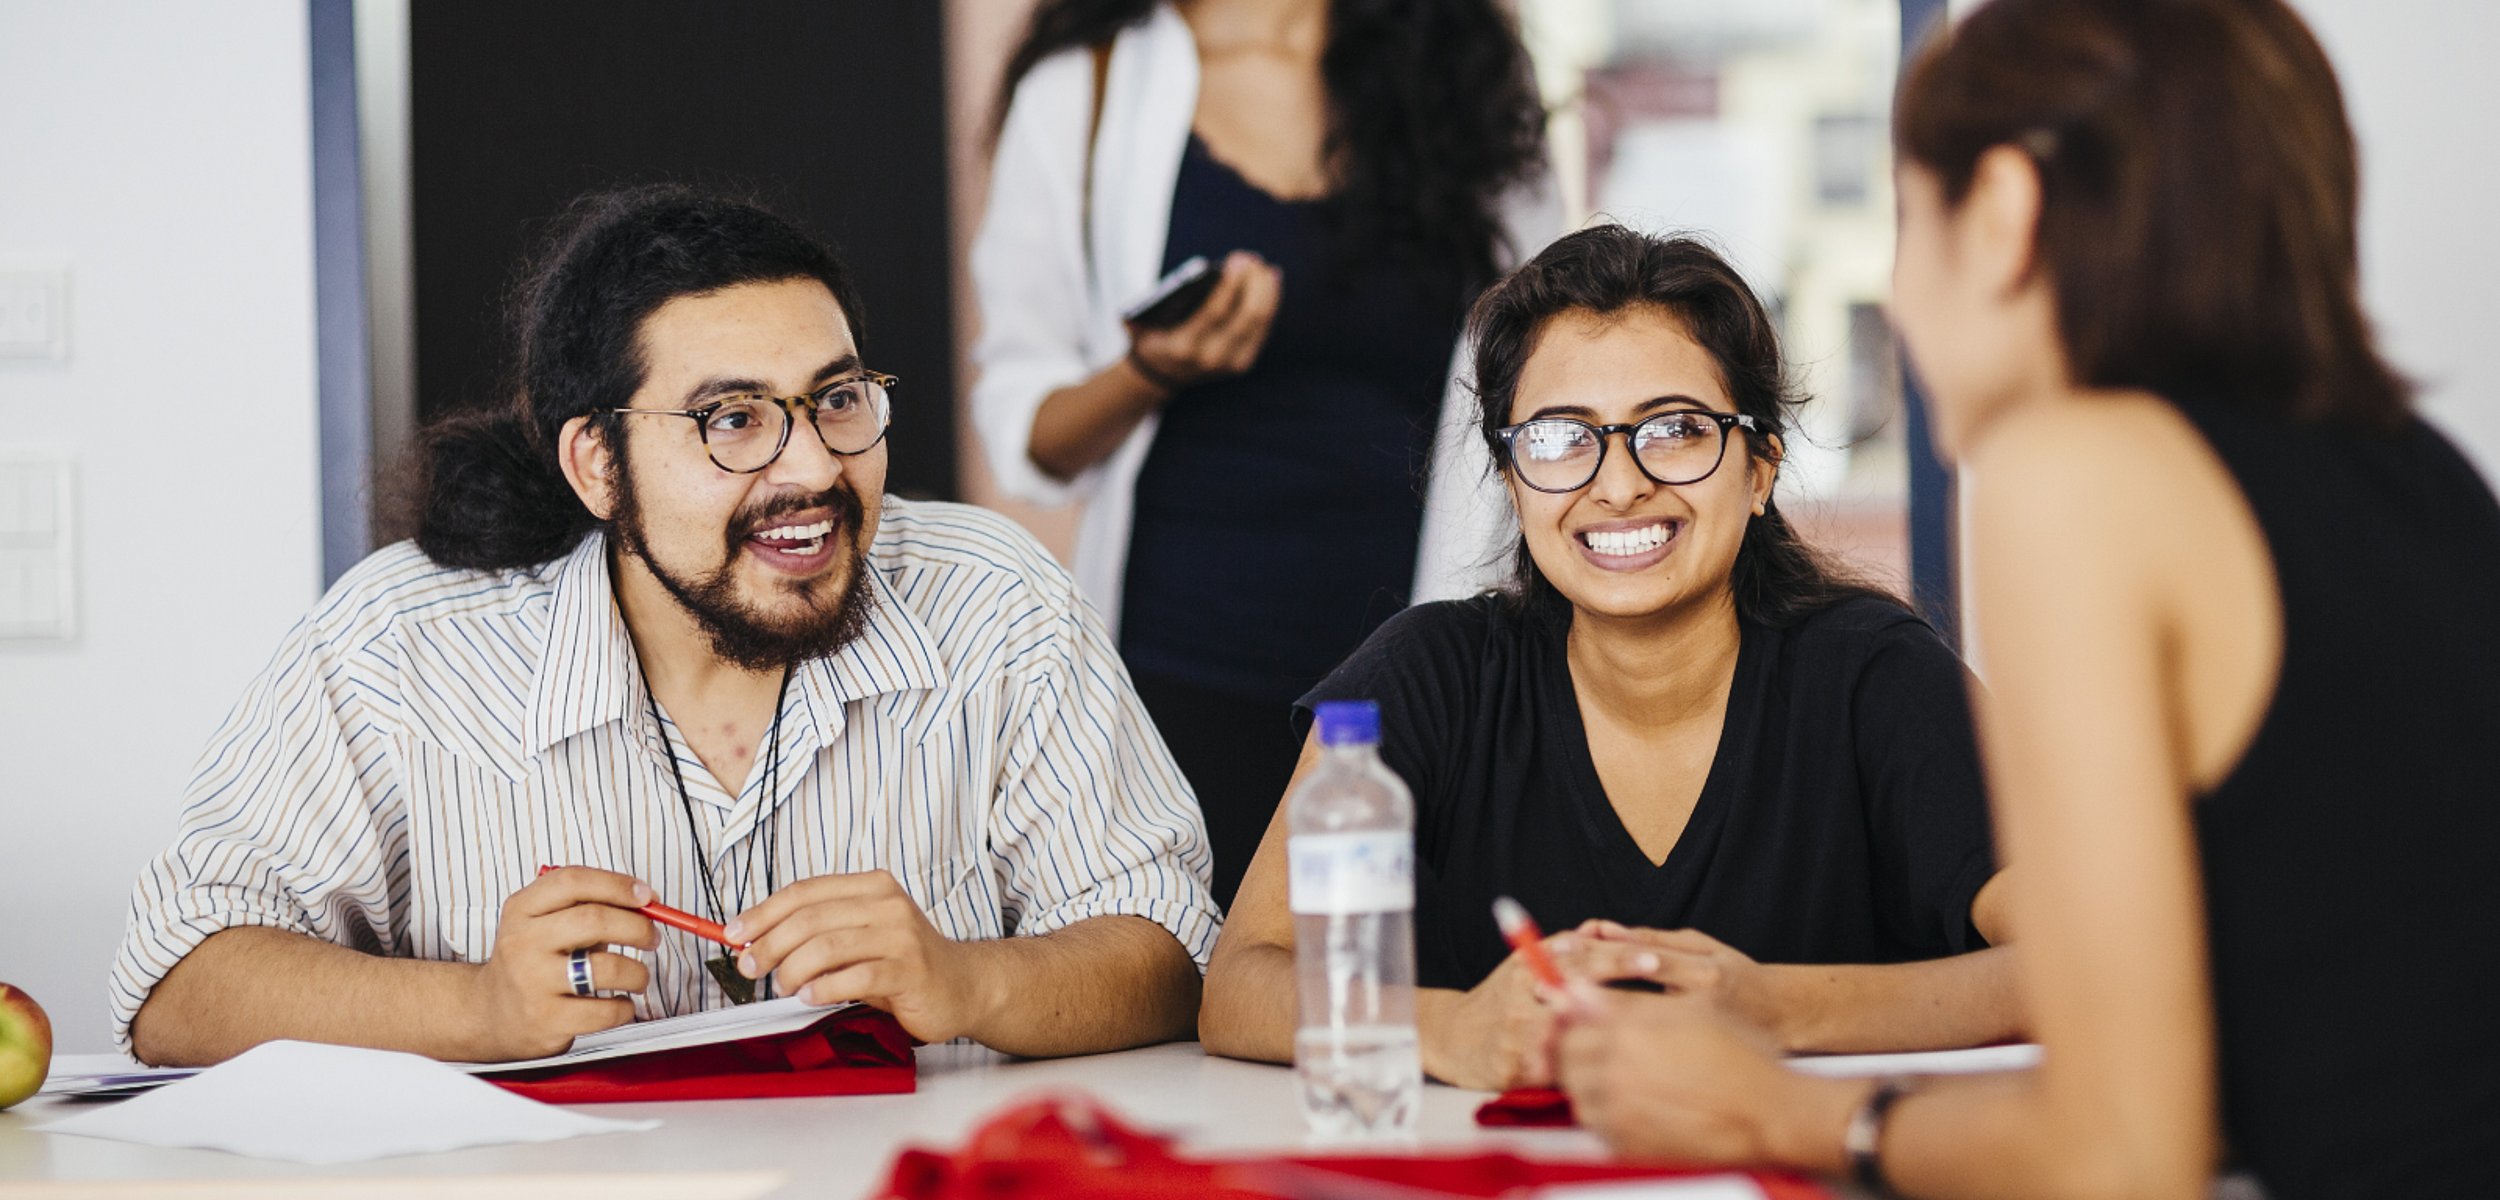 Eine Gruppe Studierender sitzt am Tisch, eine Studentin davon blickt lachend in die Kamera